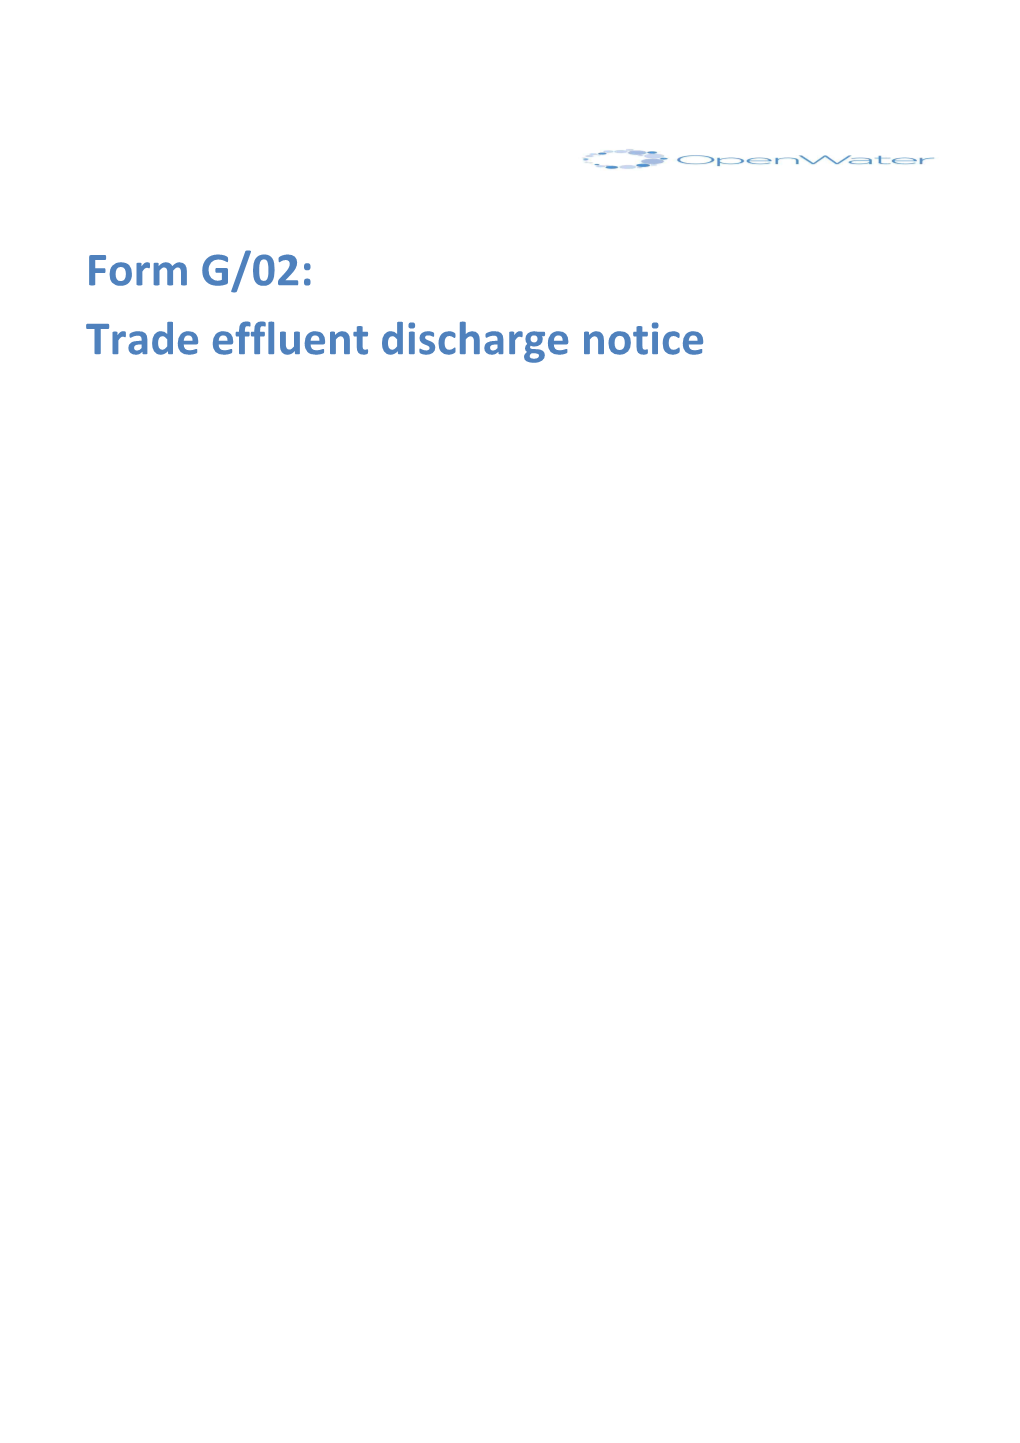 Trade Effluent Discharge Notice